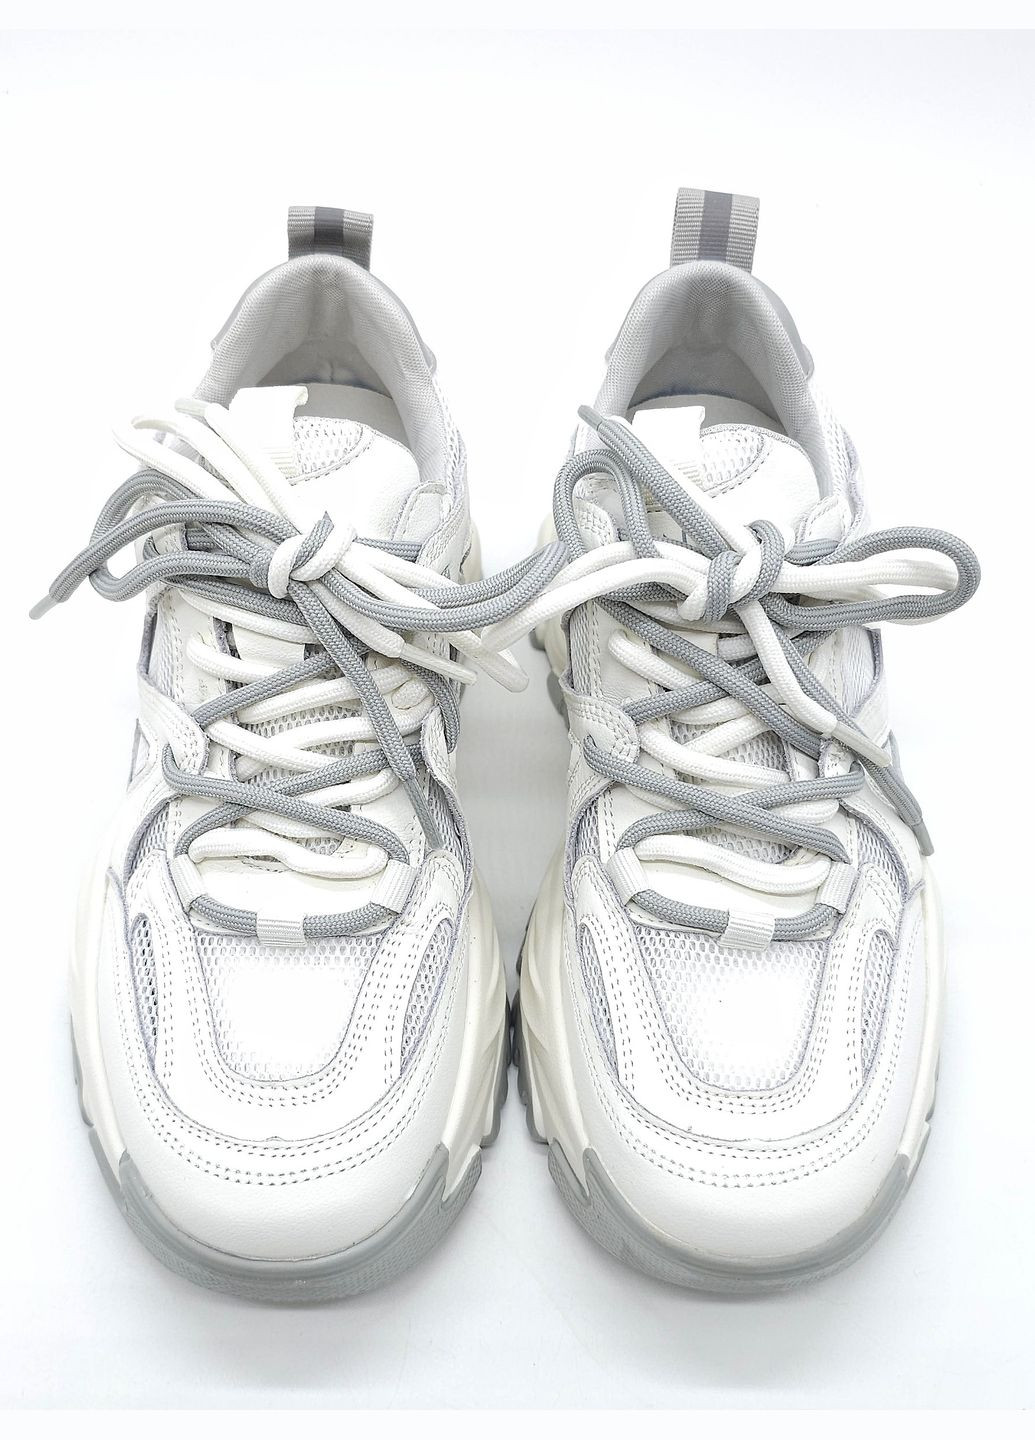 Белые всесезонные женские кроссовки бежевые кожаные l-11-52 23 см(р) Lonza